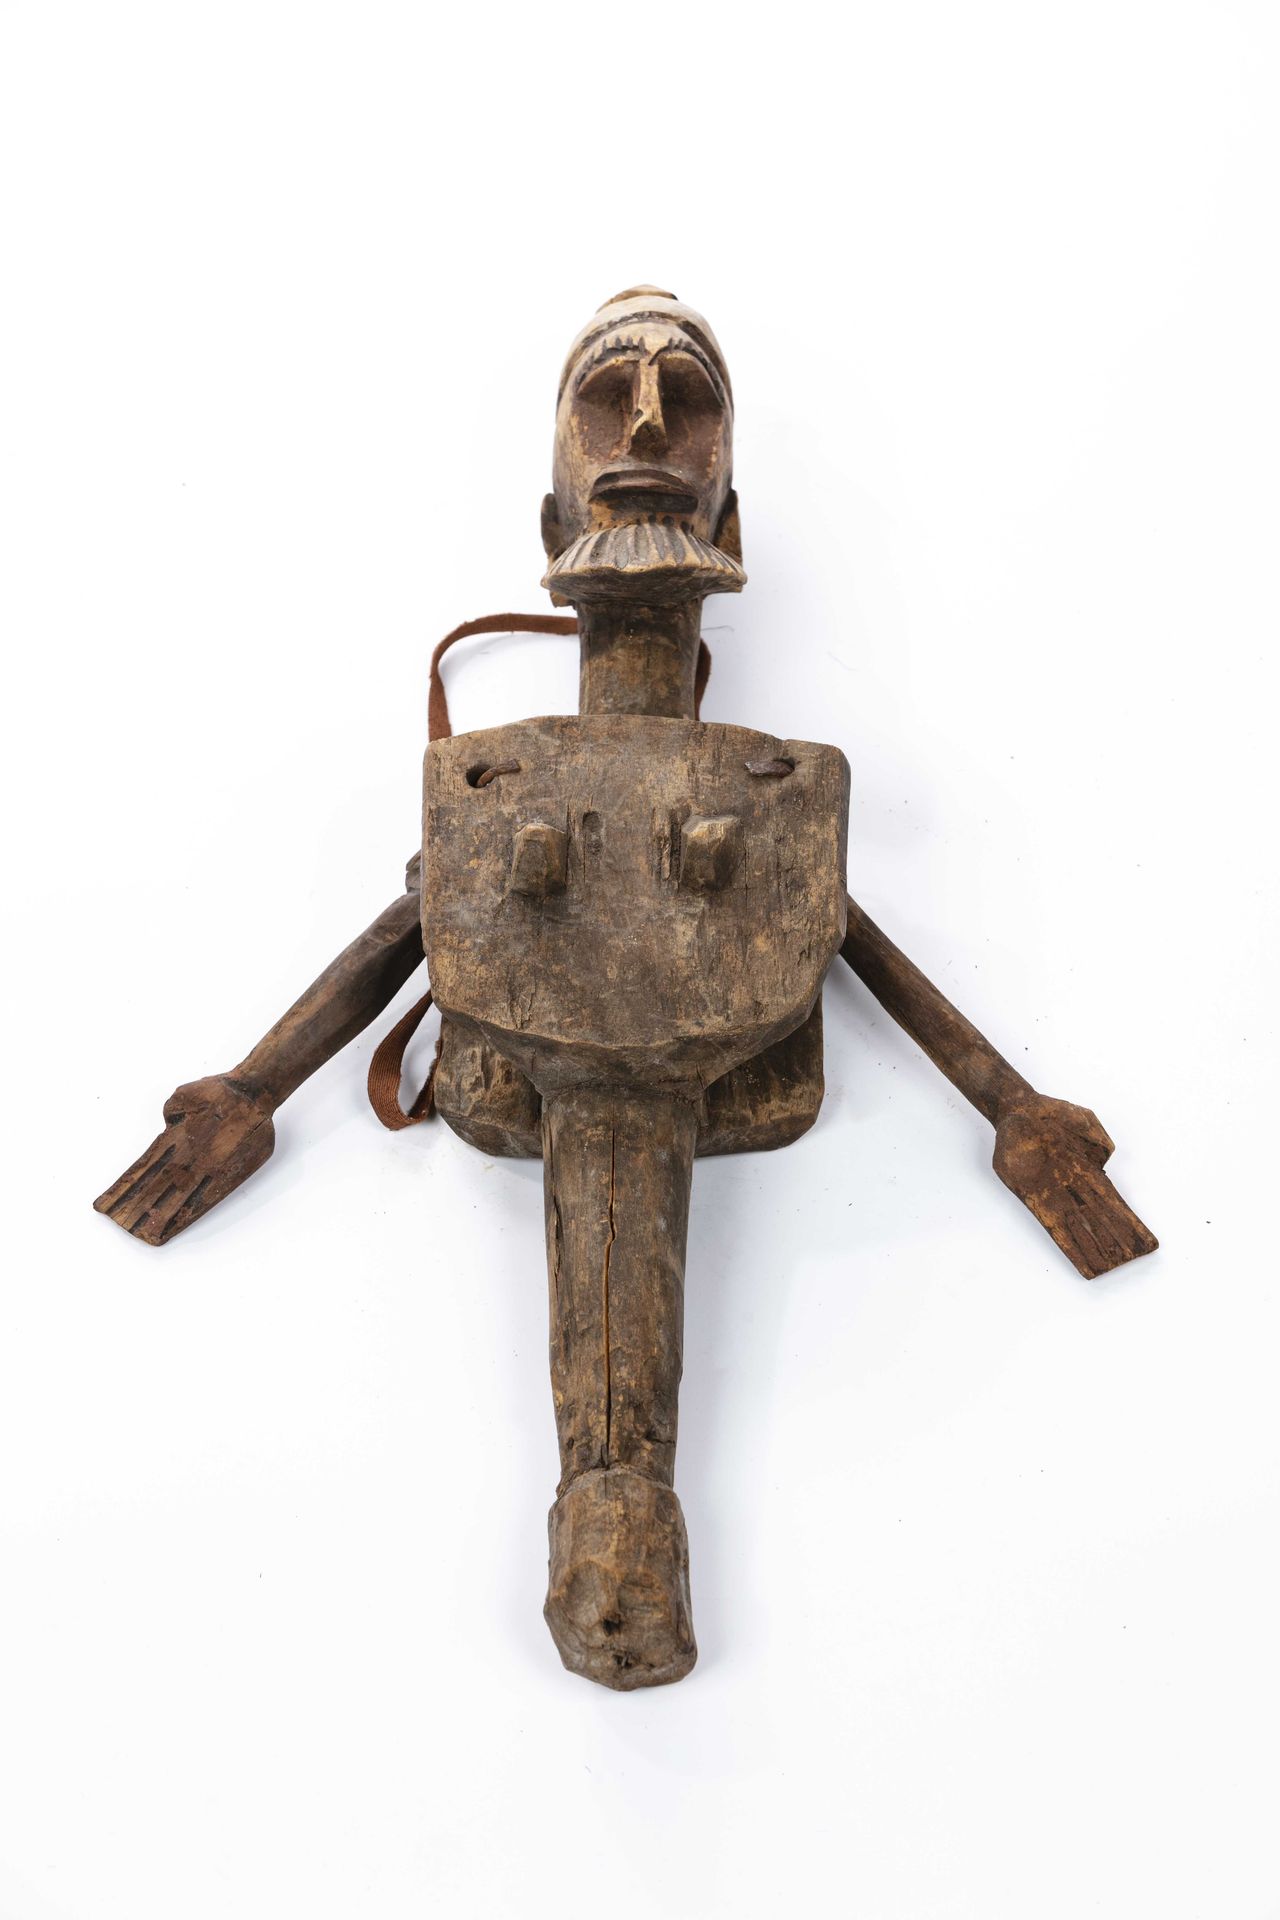 Null Marionette de style bozo, bambara
Mali
Bois, ficelle
H : 41 cm
Le haut du c&hellip;